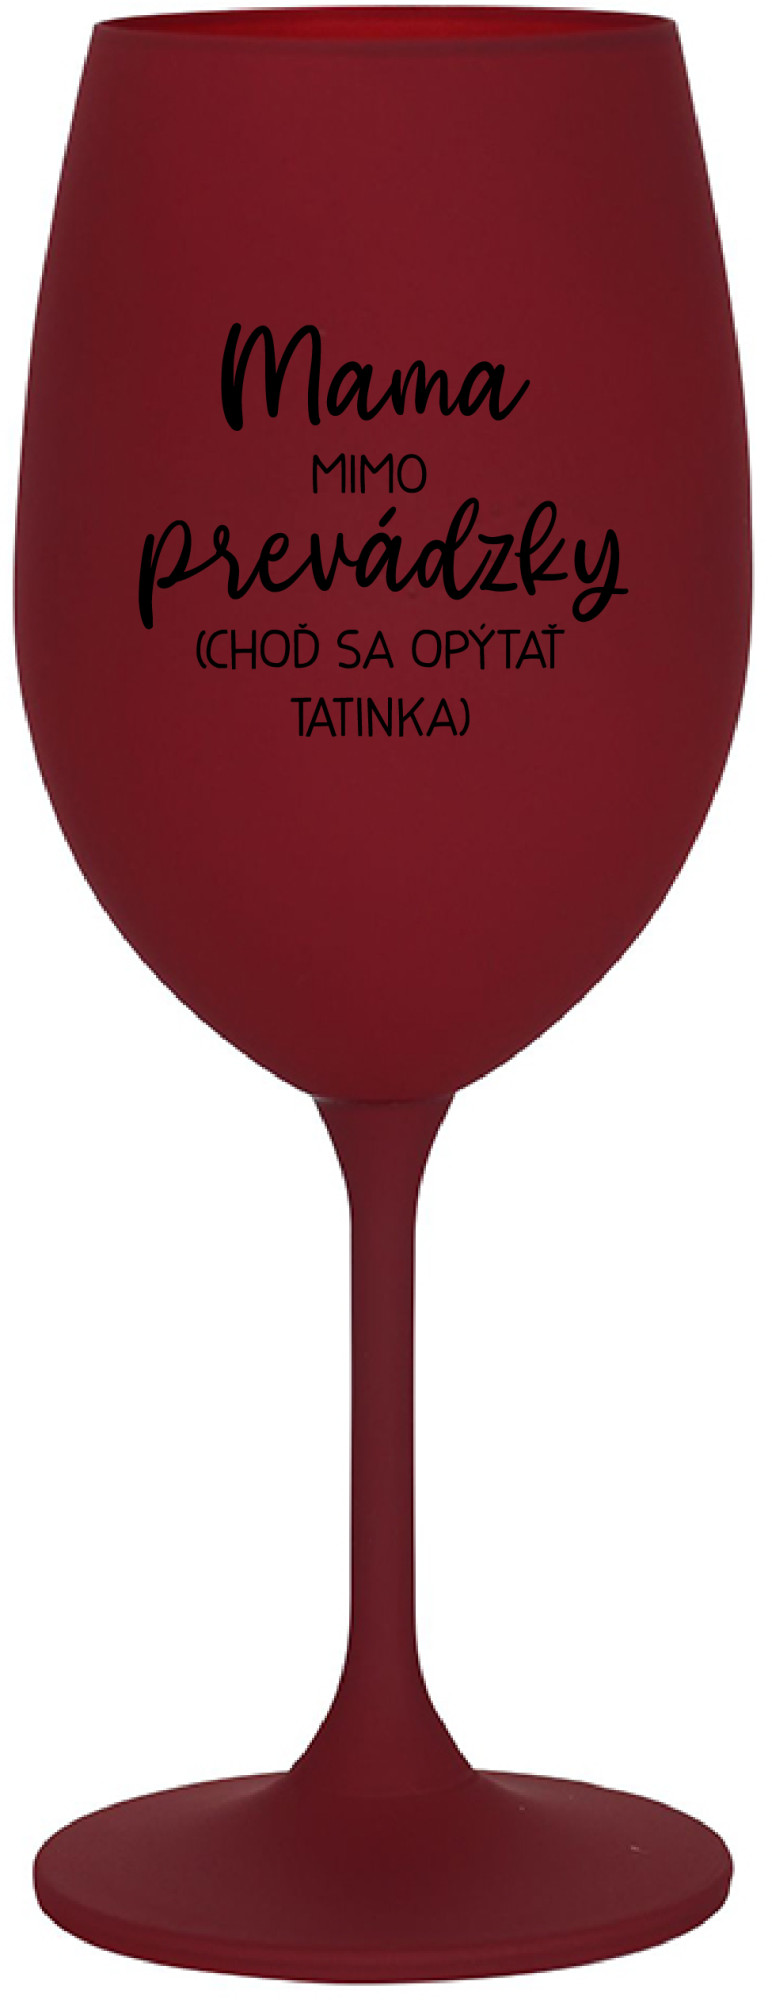 MAMA MIMO PREVÁDZKY (CHOĎ SA OPÝTAŤ TATINKA) - bordo sklenice na víno 350 ml